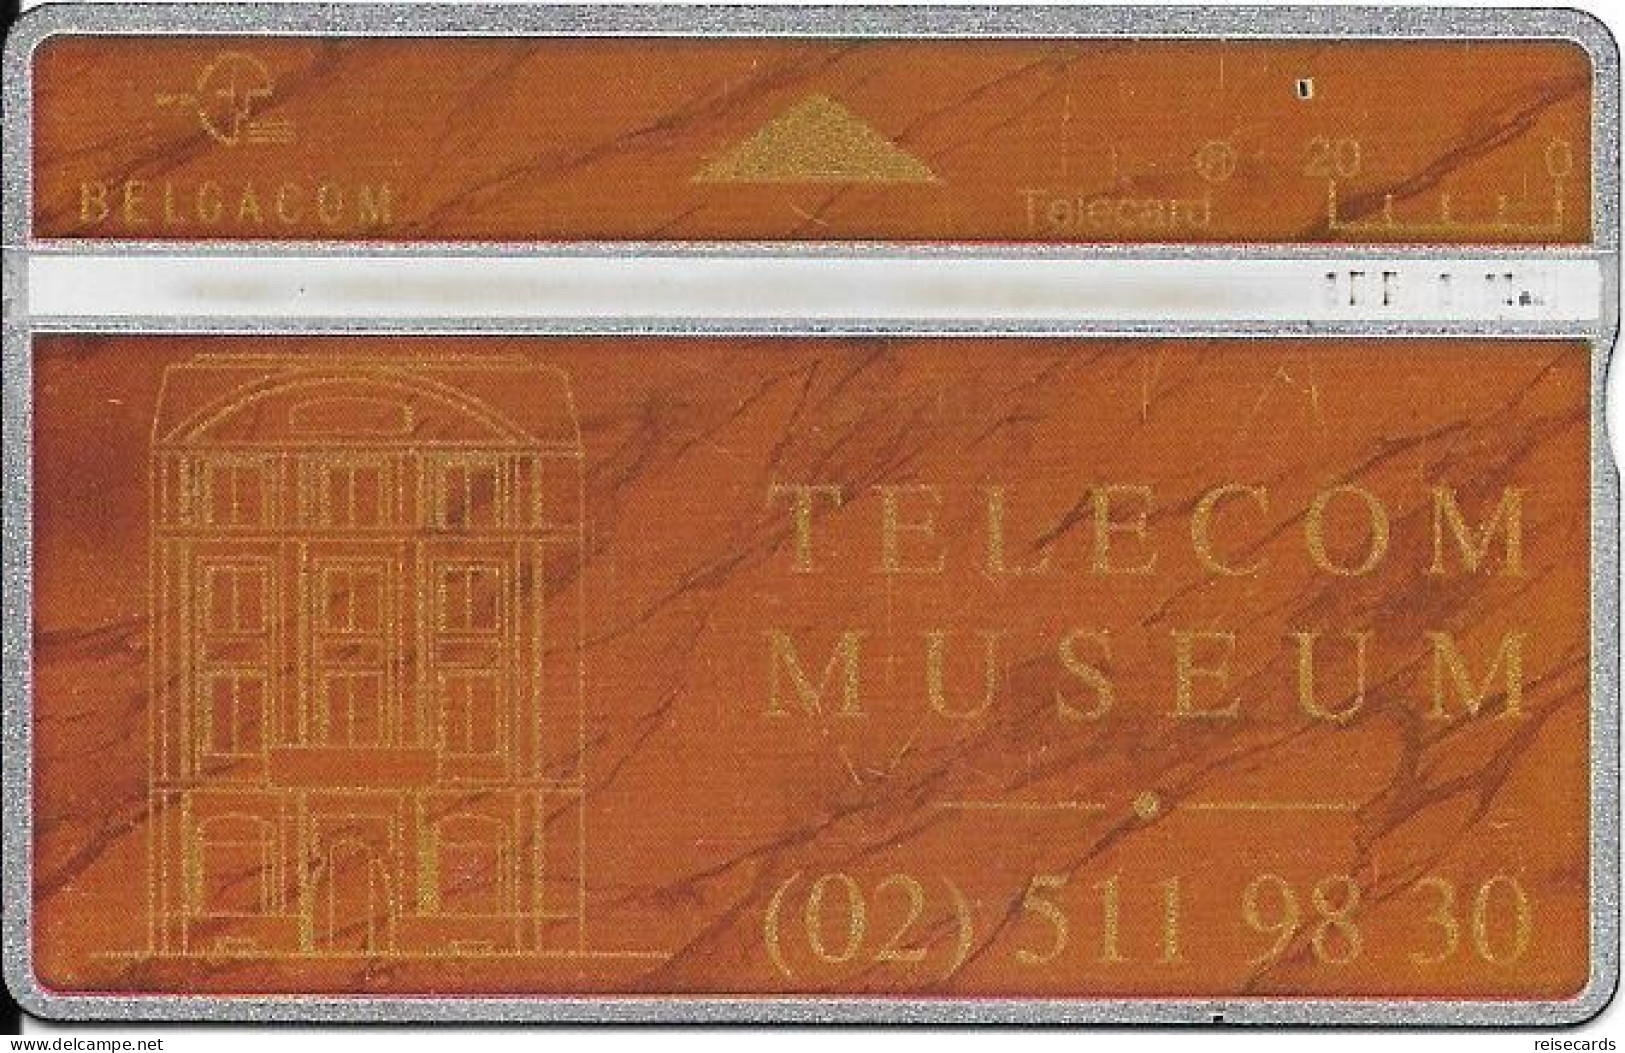 Belgium: Belgacom 407E Telecom Museum - Sin Chip